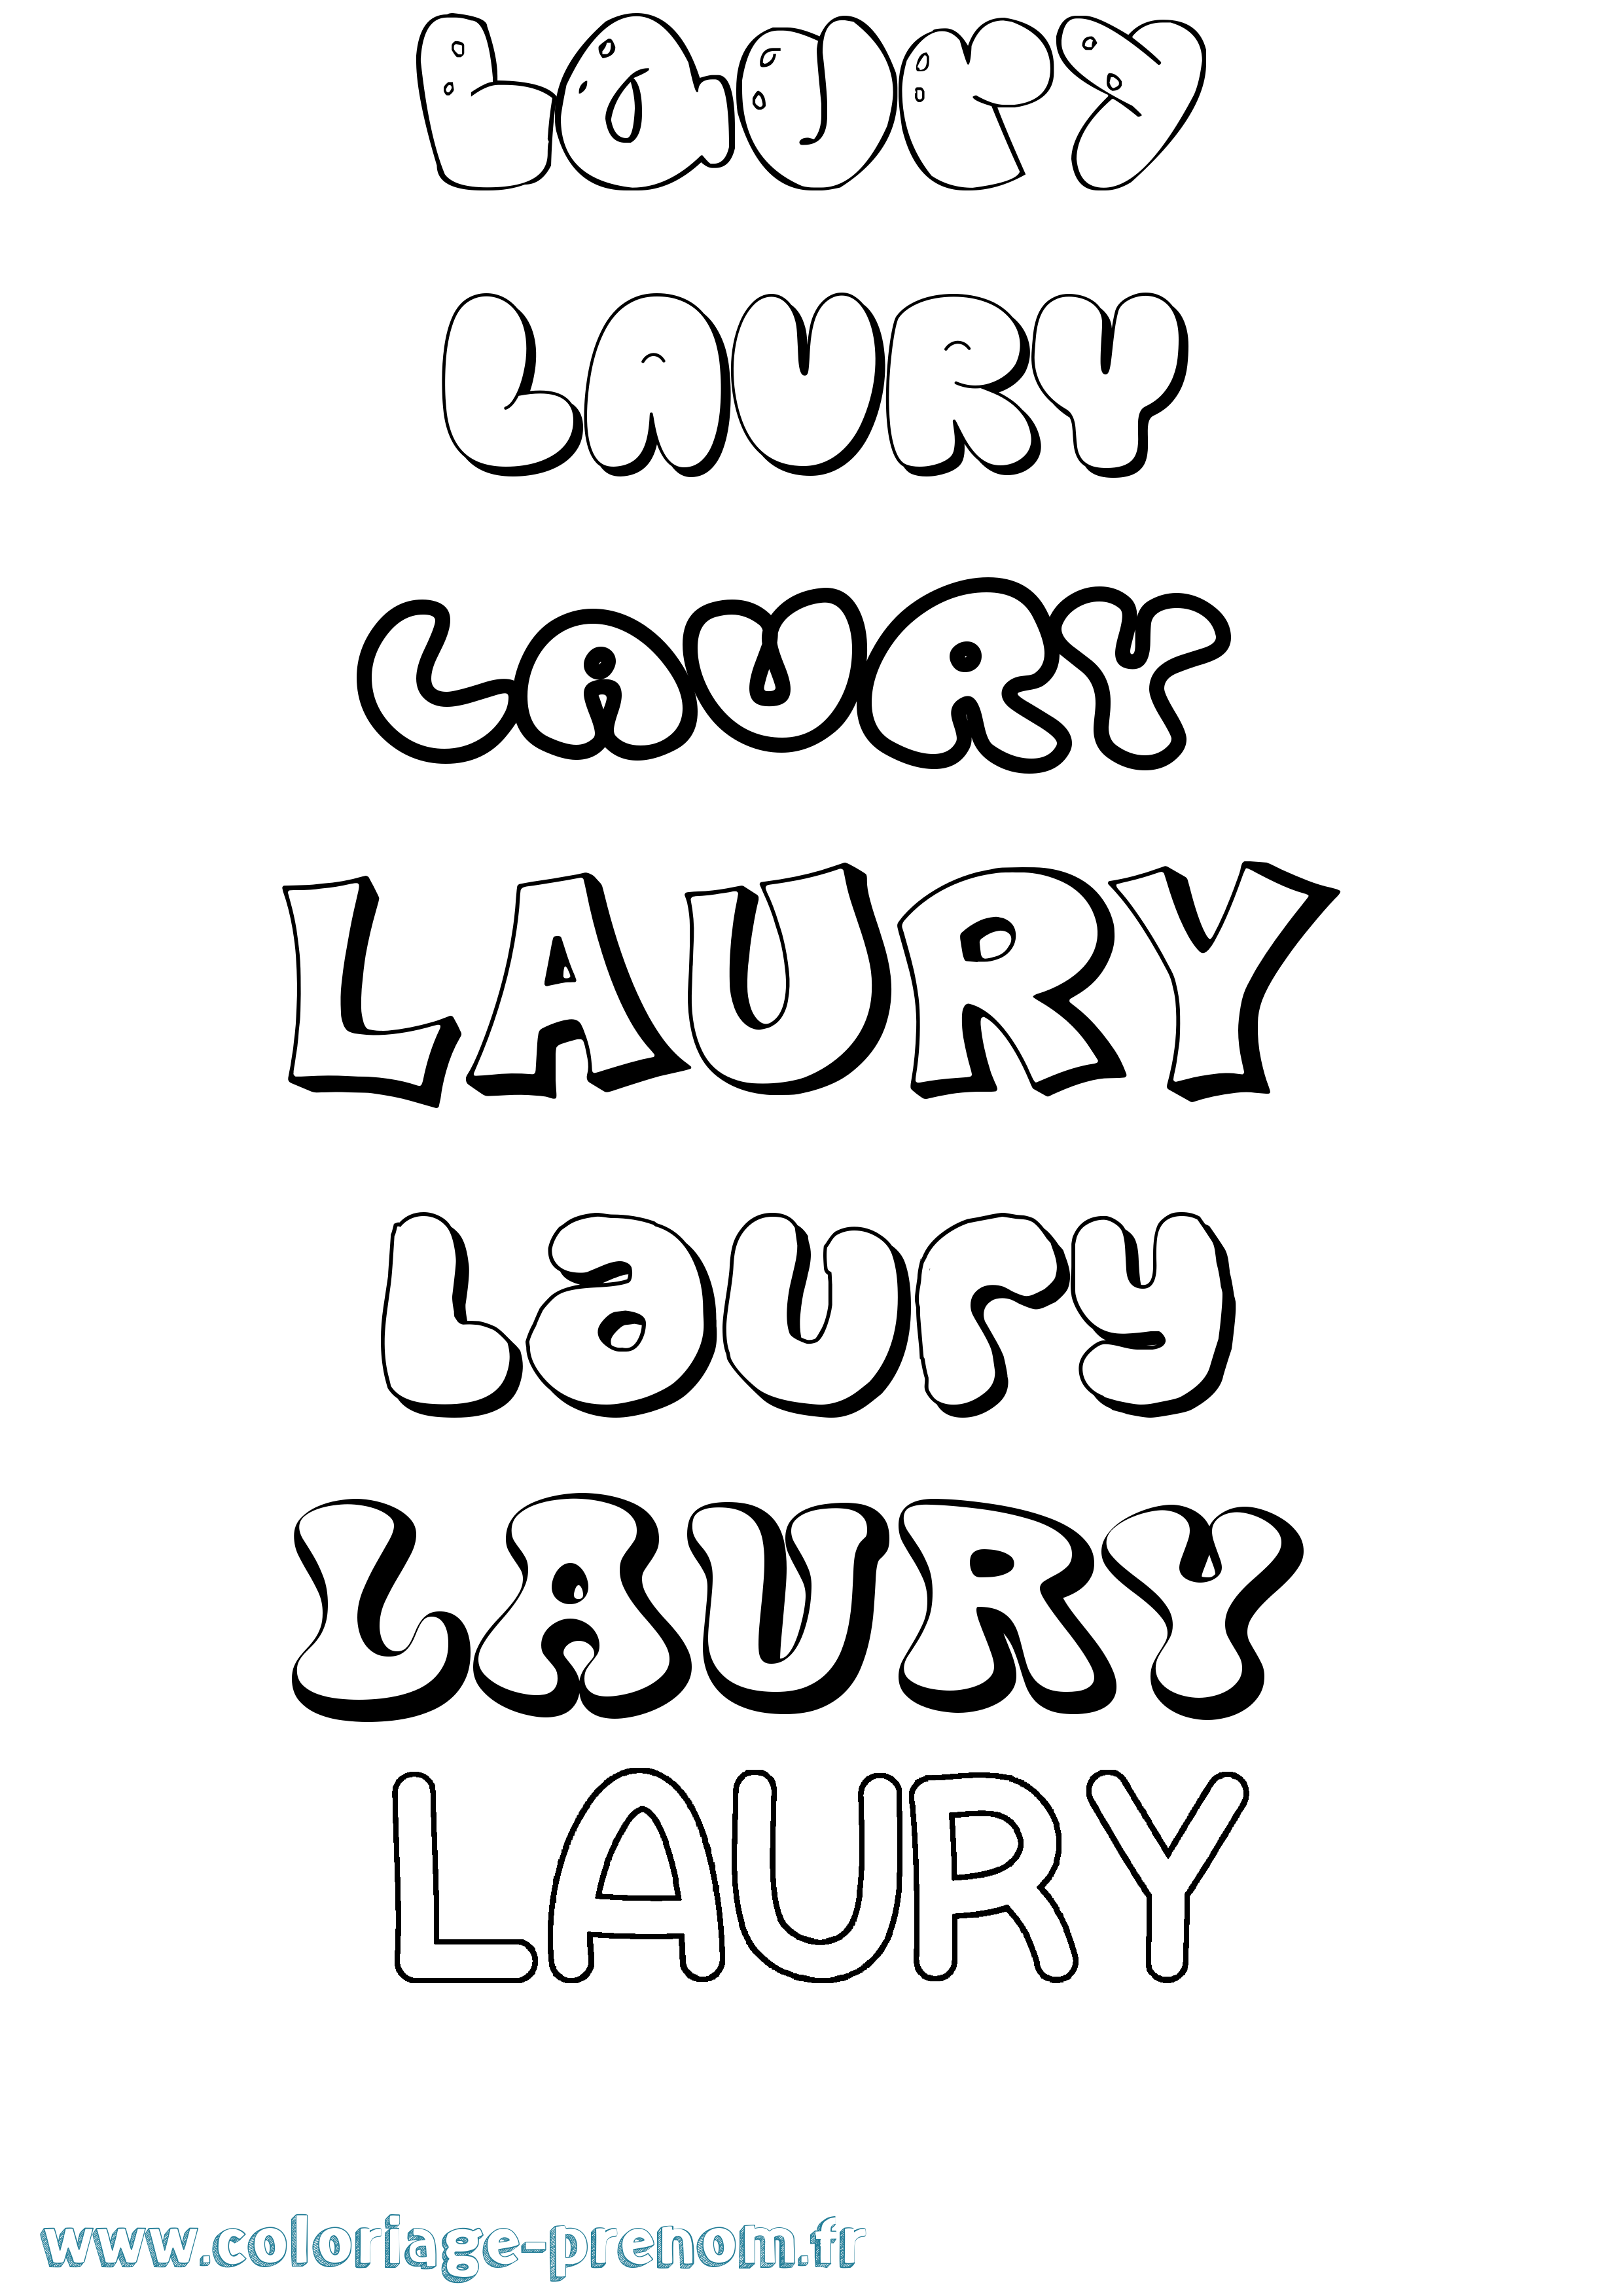 Coloriage prénom Laury Bubble